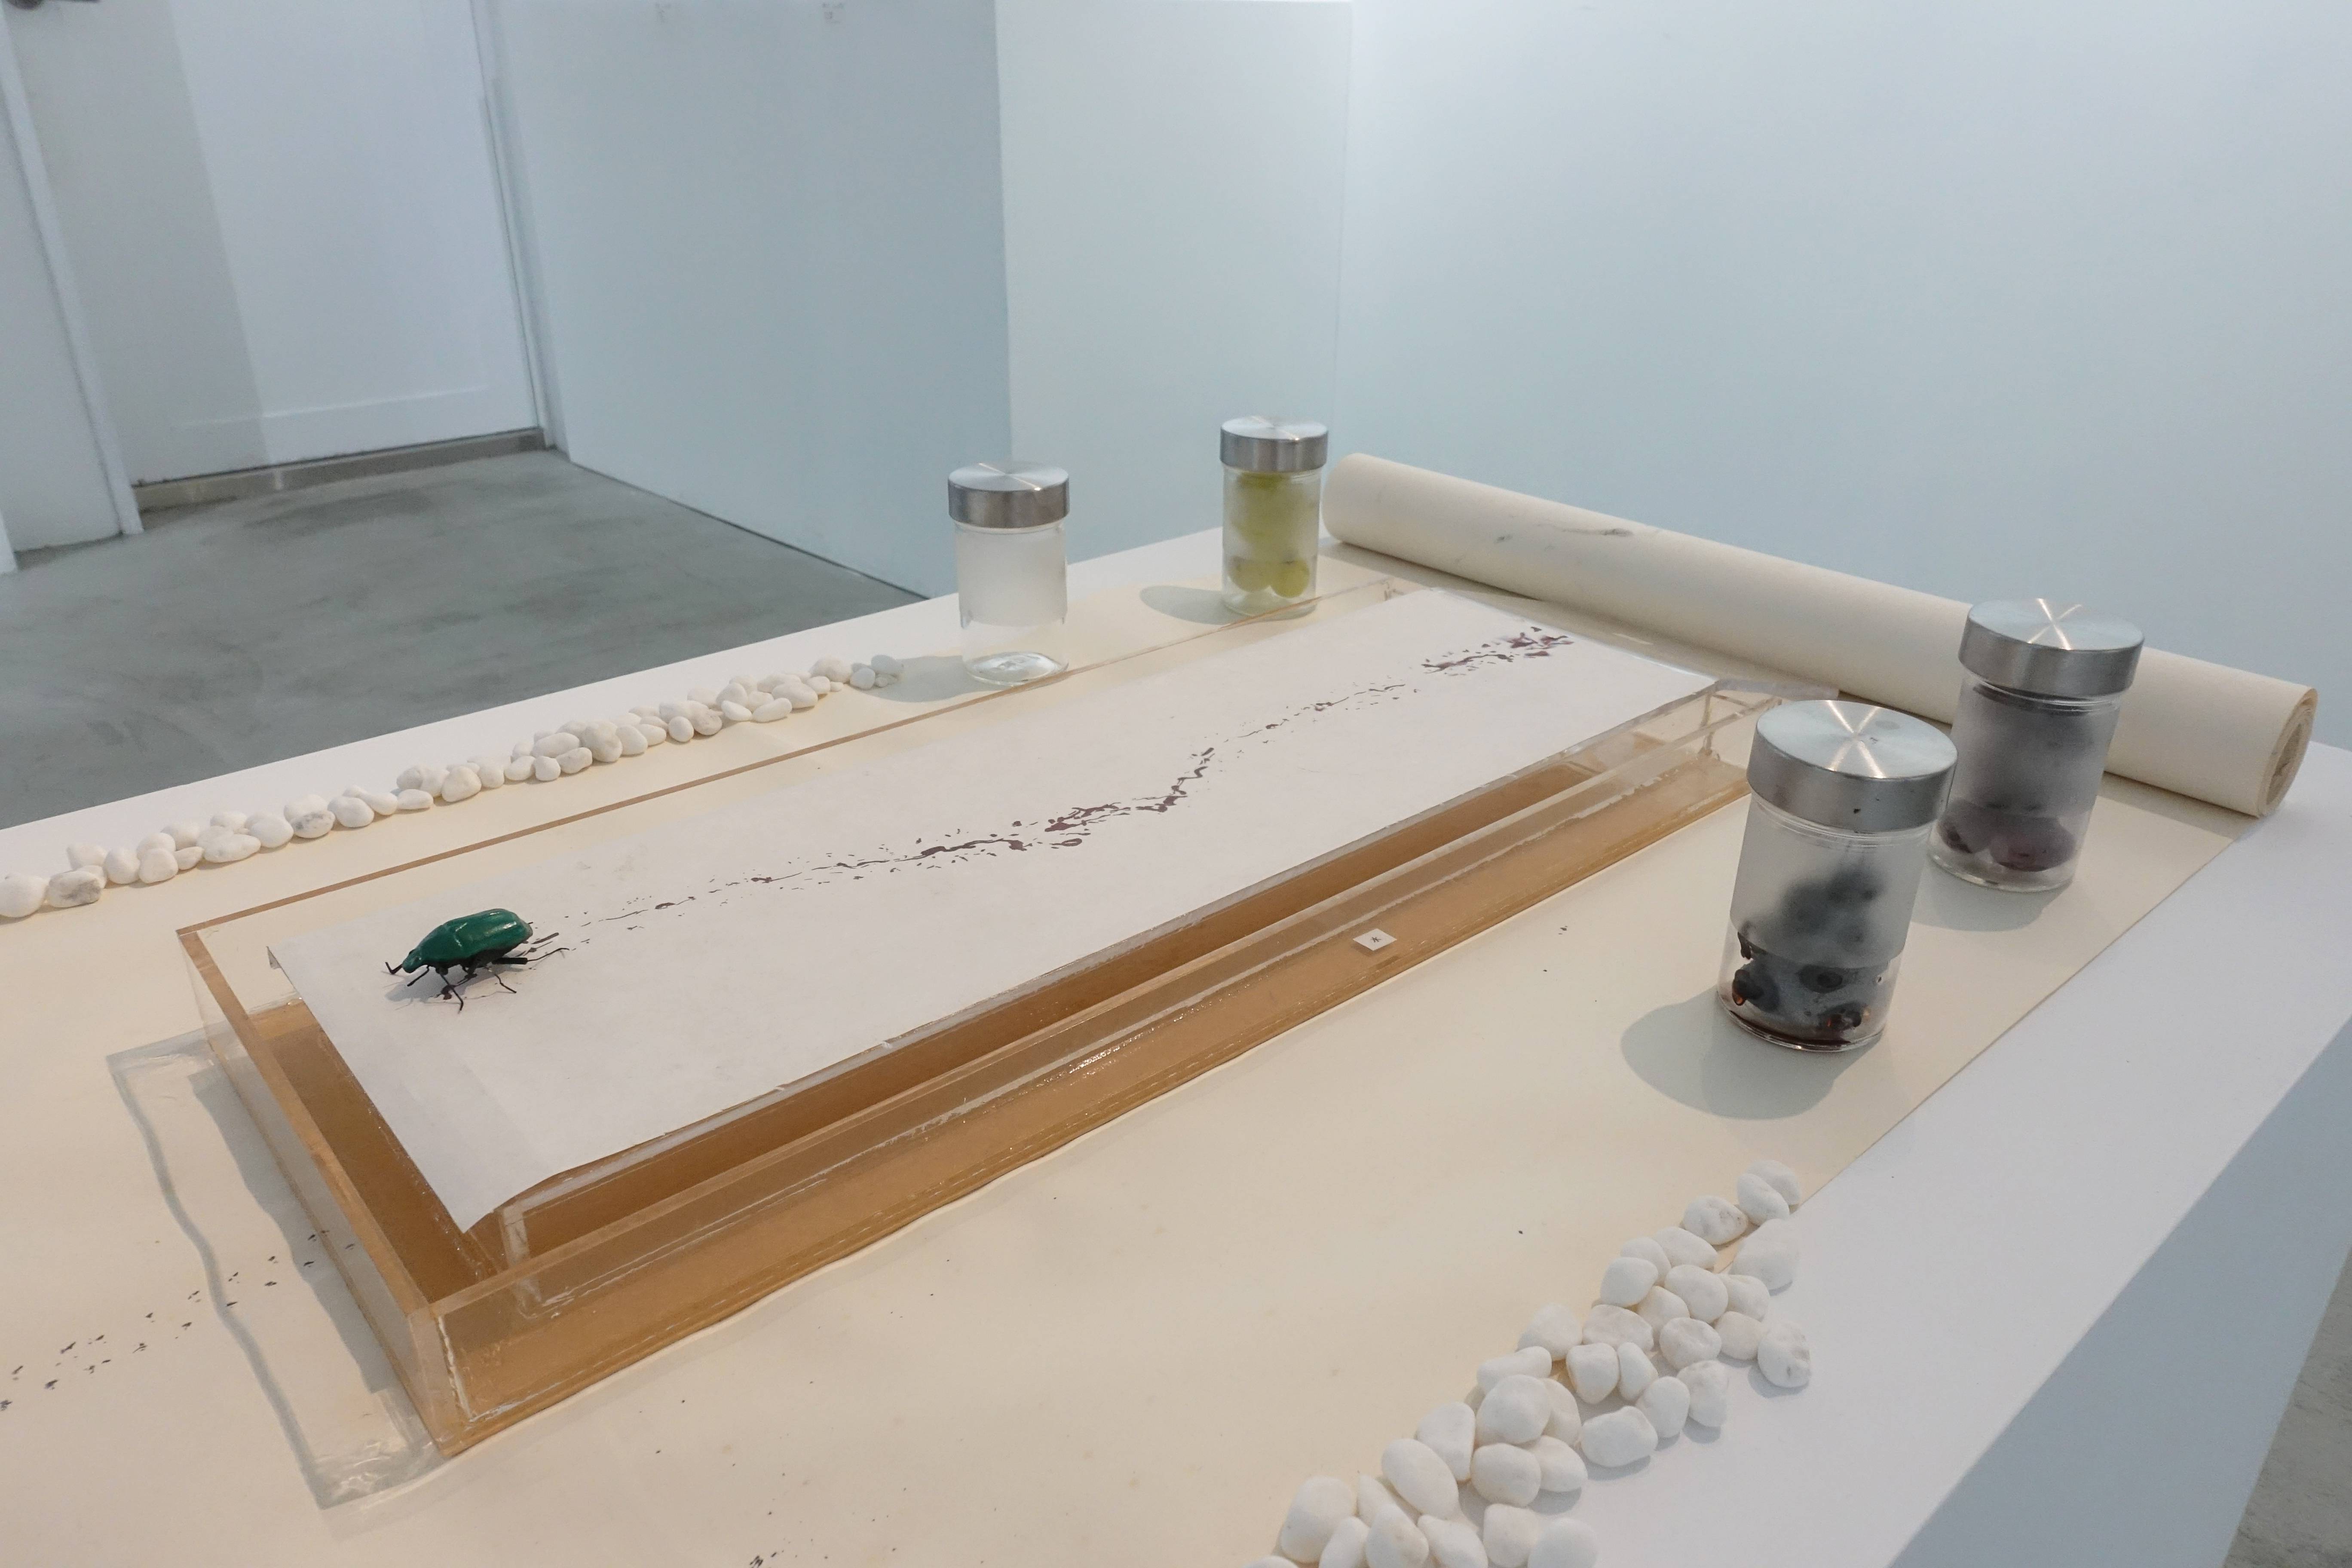 【蟲文展——朱贏椿與蟲子們的紙上邂逅】作品23號於展場空間展示。